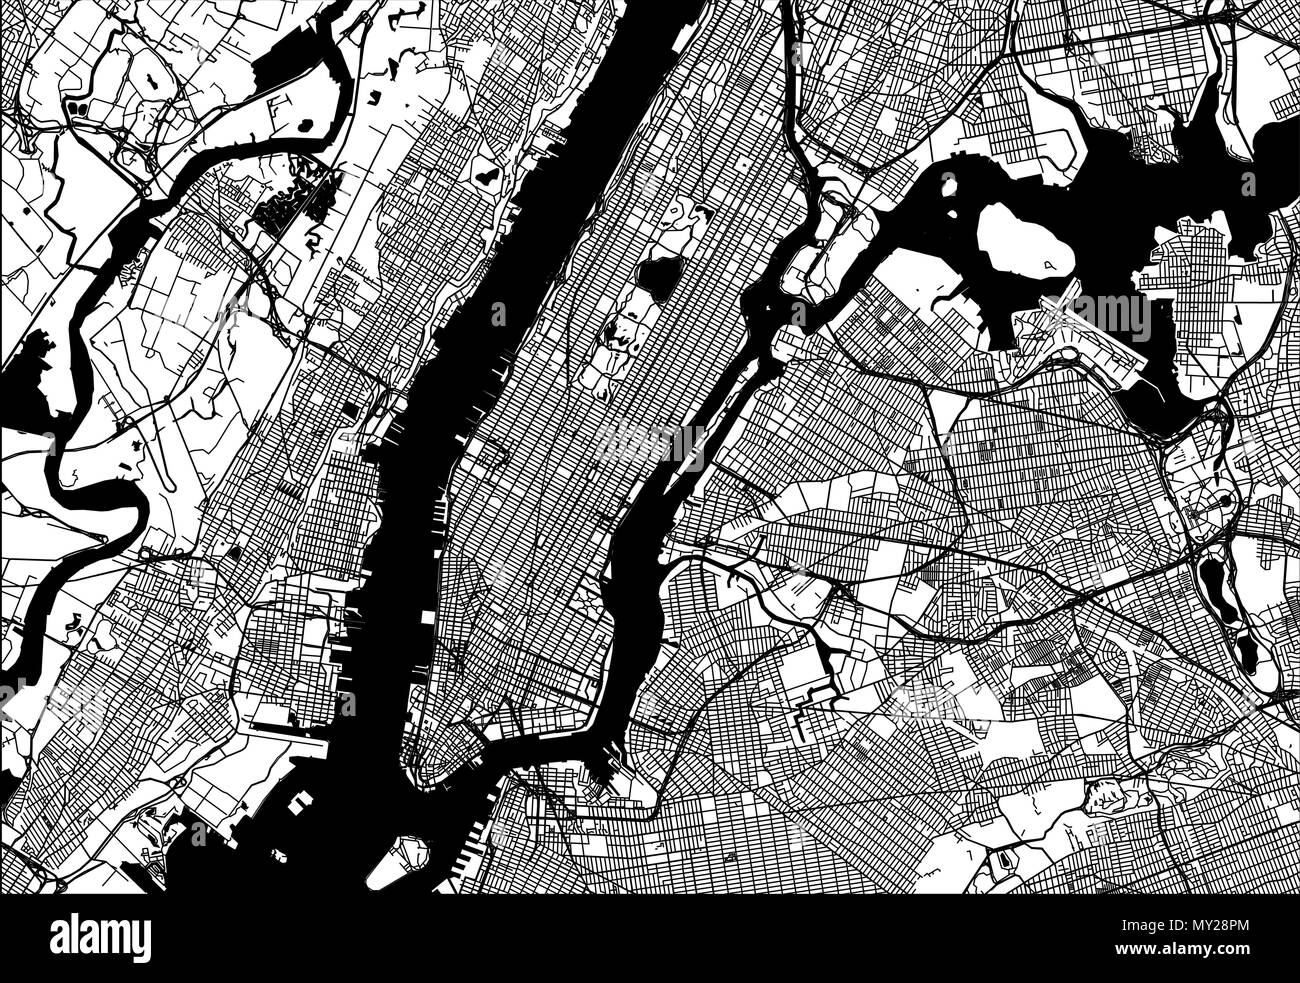 Mappa di Manhattan con parti del Bronx, Queens, Brooklyn e Jersey City. Molto scrupoloso versione senza ponti e nomi. Illustrazione Vettoriale